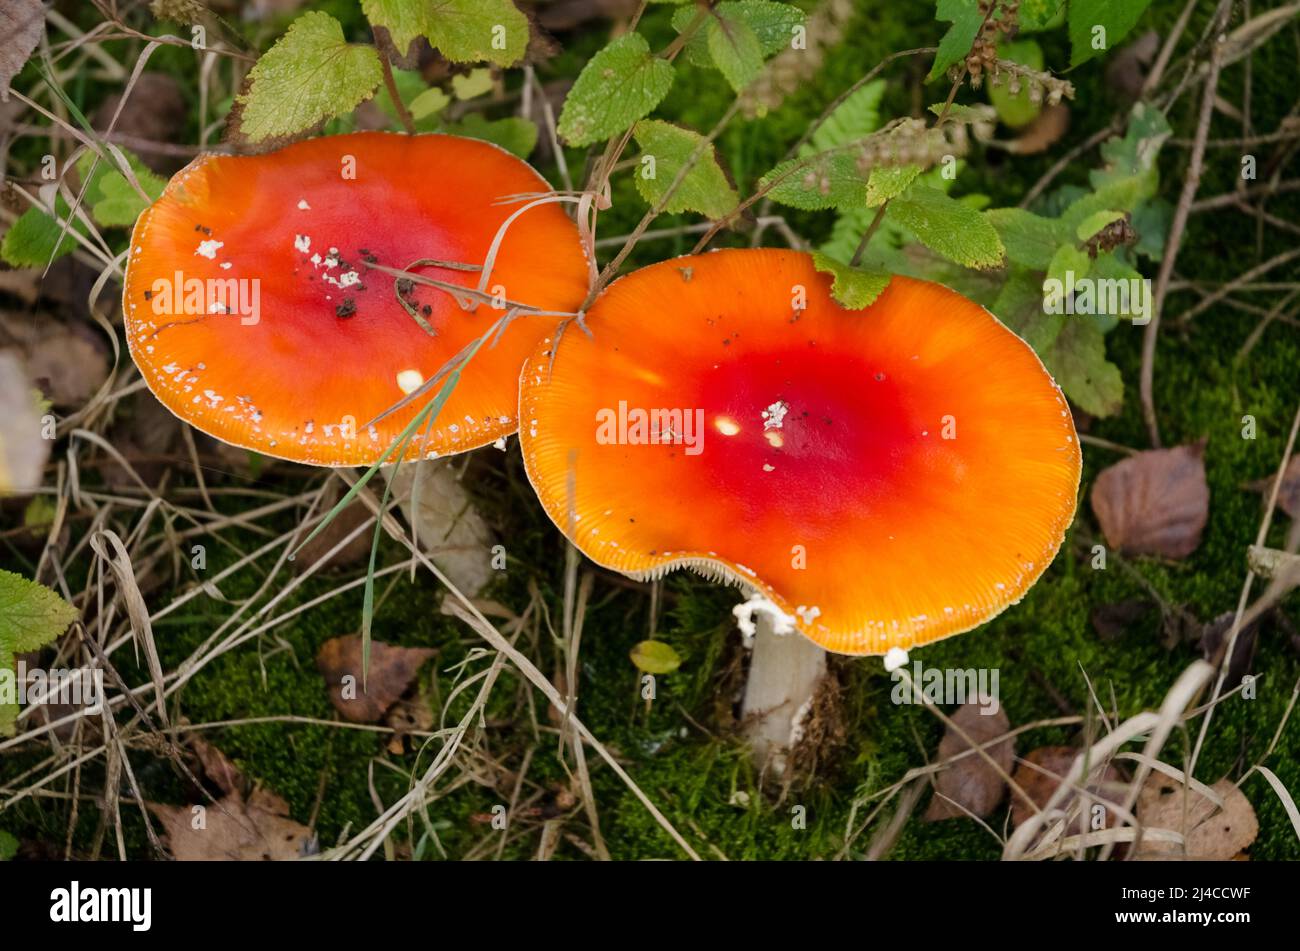 Amanita muscaria rouge, connue sous le nom d'agarique de mouche ou amanita champignons avec la casquette plate rouge orange et de petites taches blanches Banque D'Images